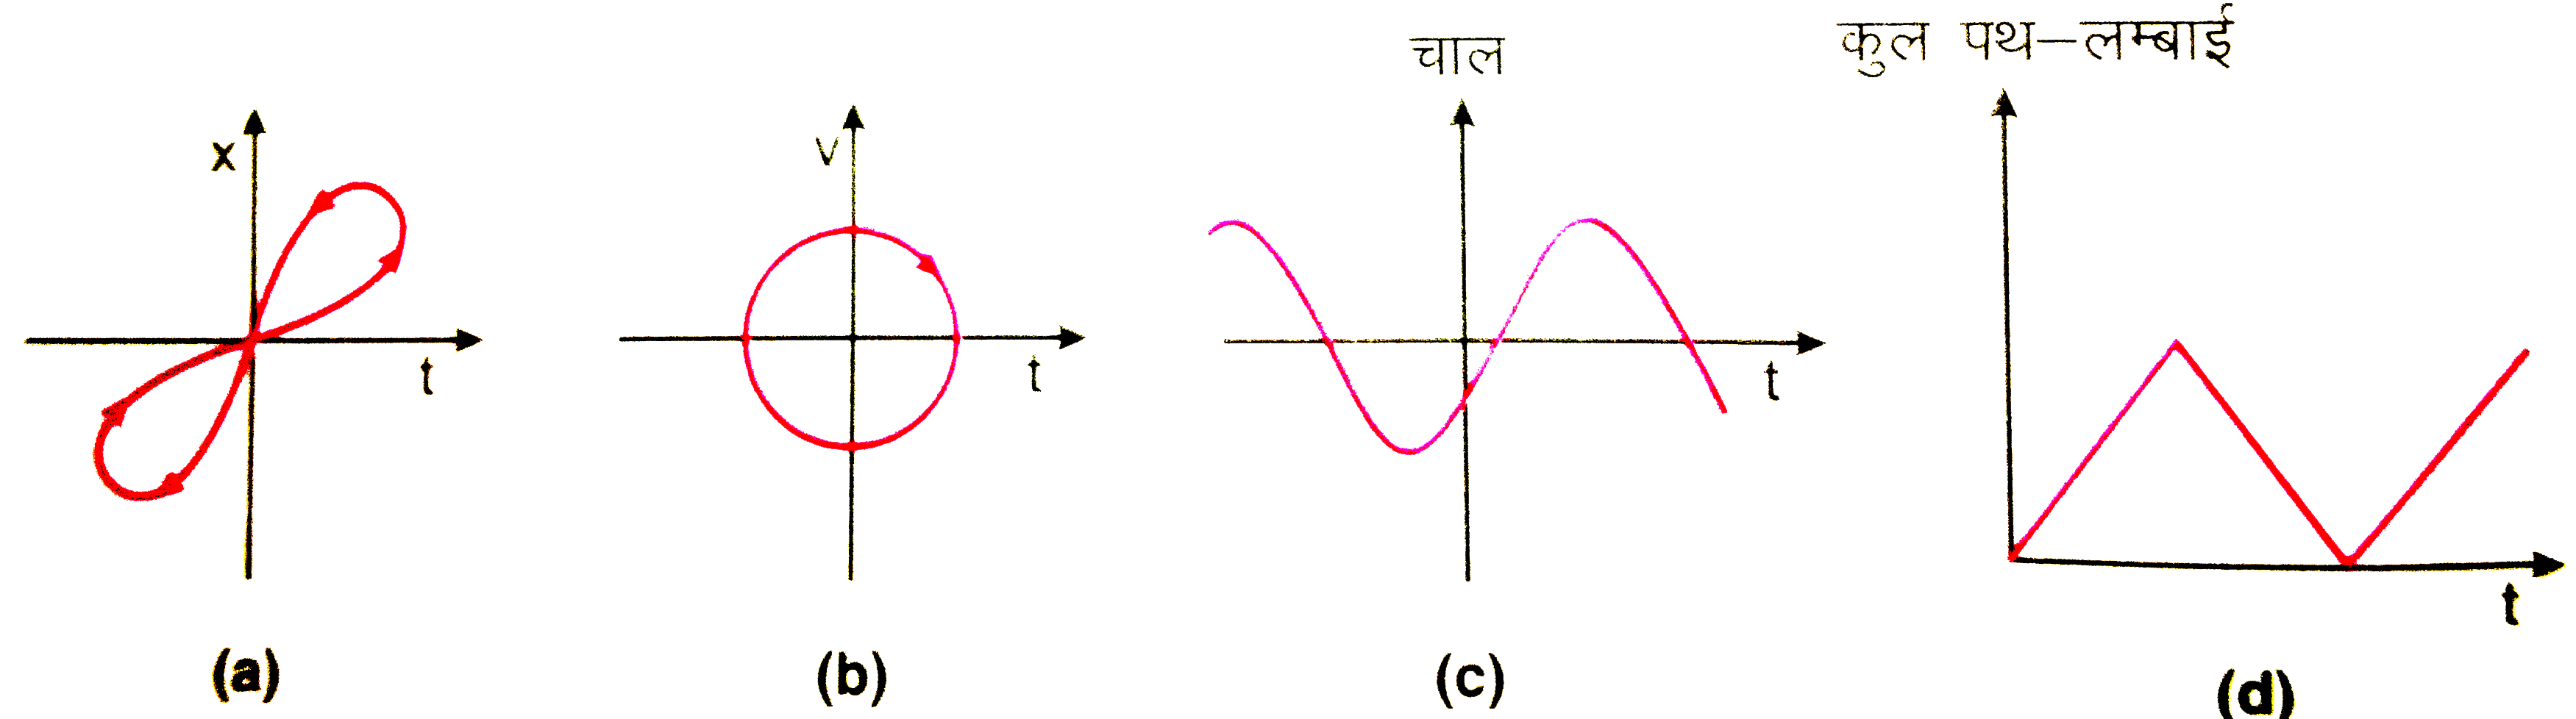 चित्र 3.51 में (a) से (d) तक के ग्राफो को ध्यान से देखिए और देखकर बताइए कि इनमे से कौन -सा ग्राफ एकविमीय गति को संभवतः नहीं दर्शा सकता ।